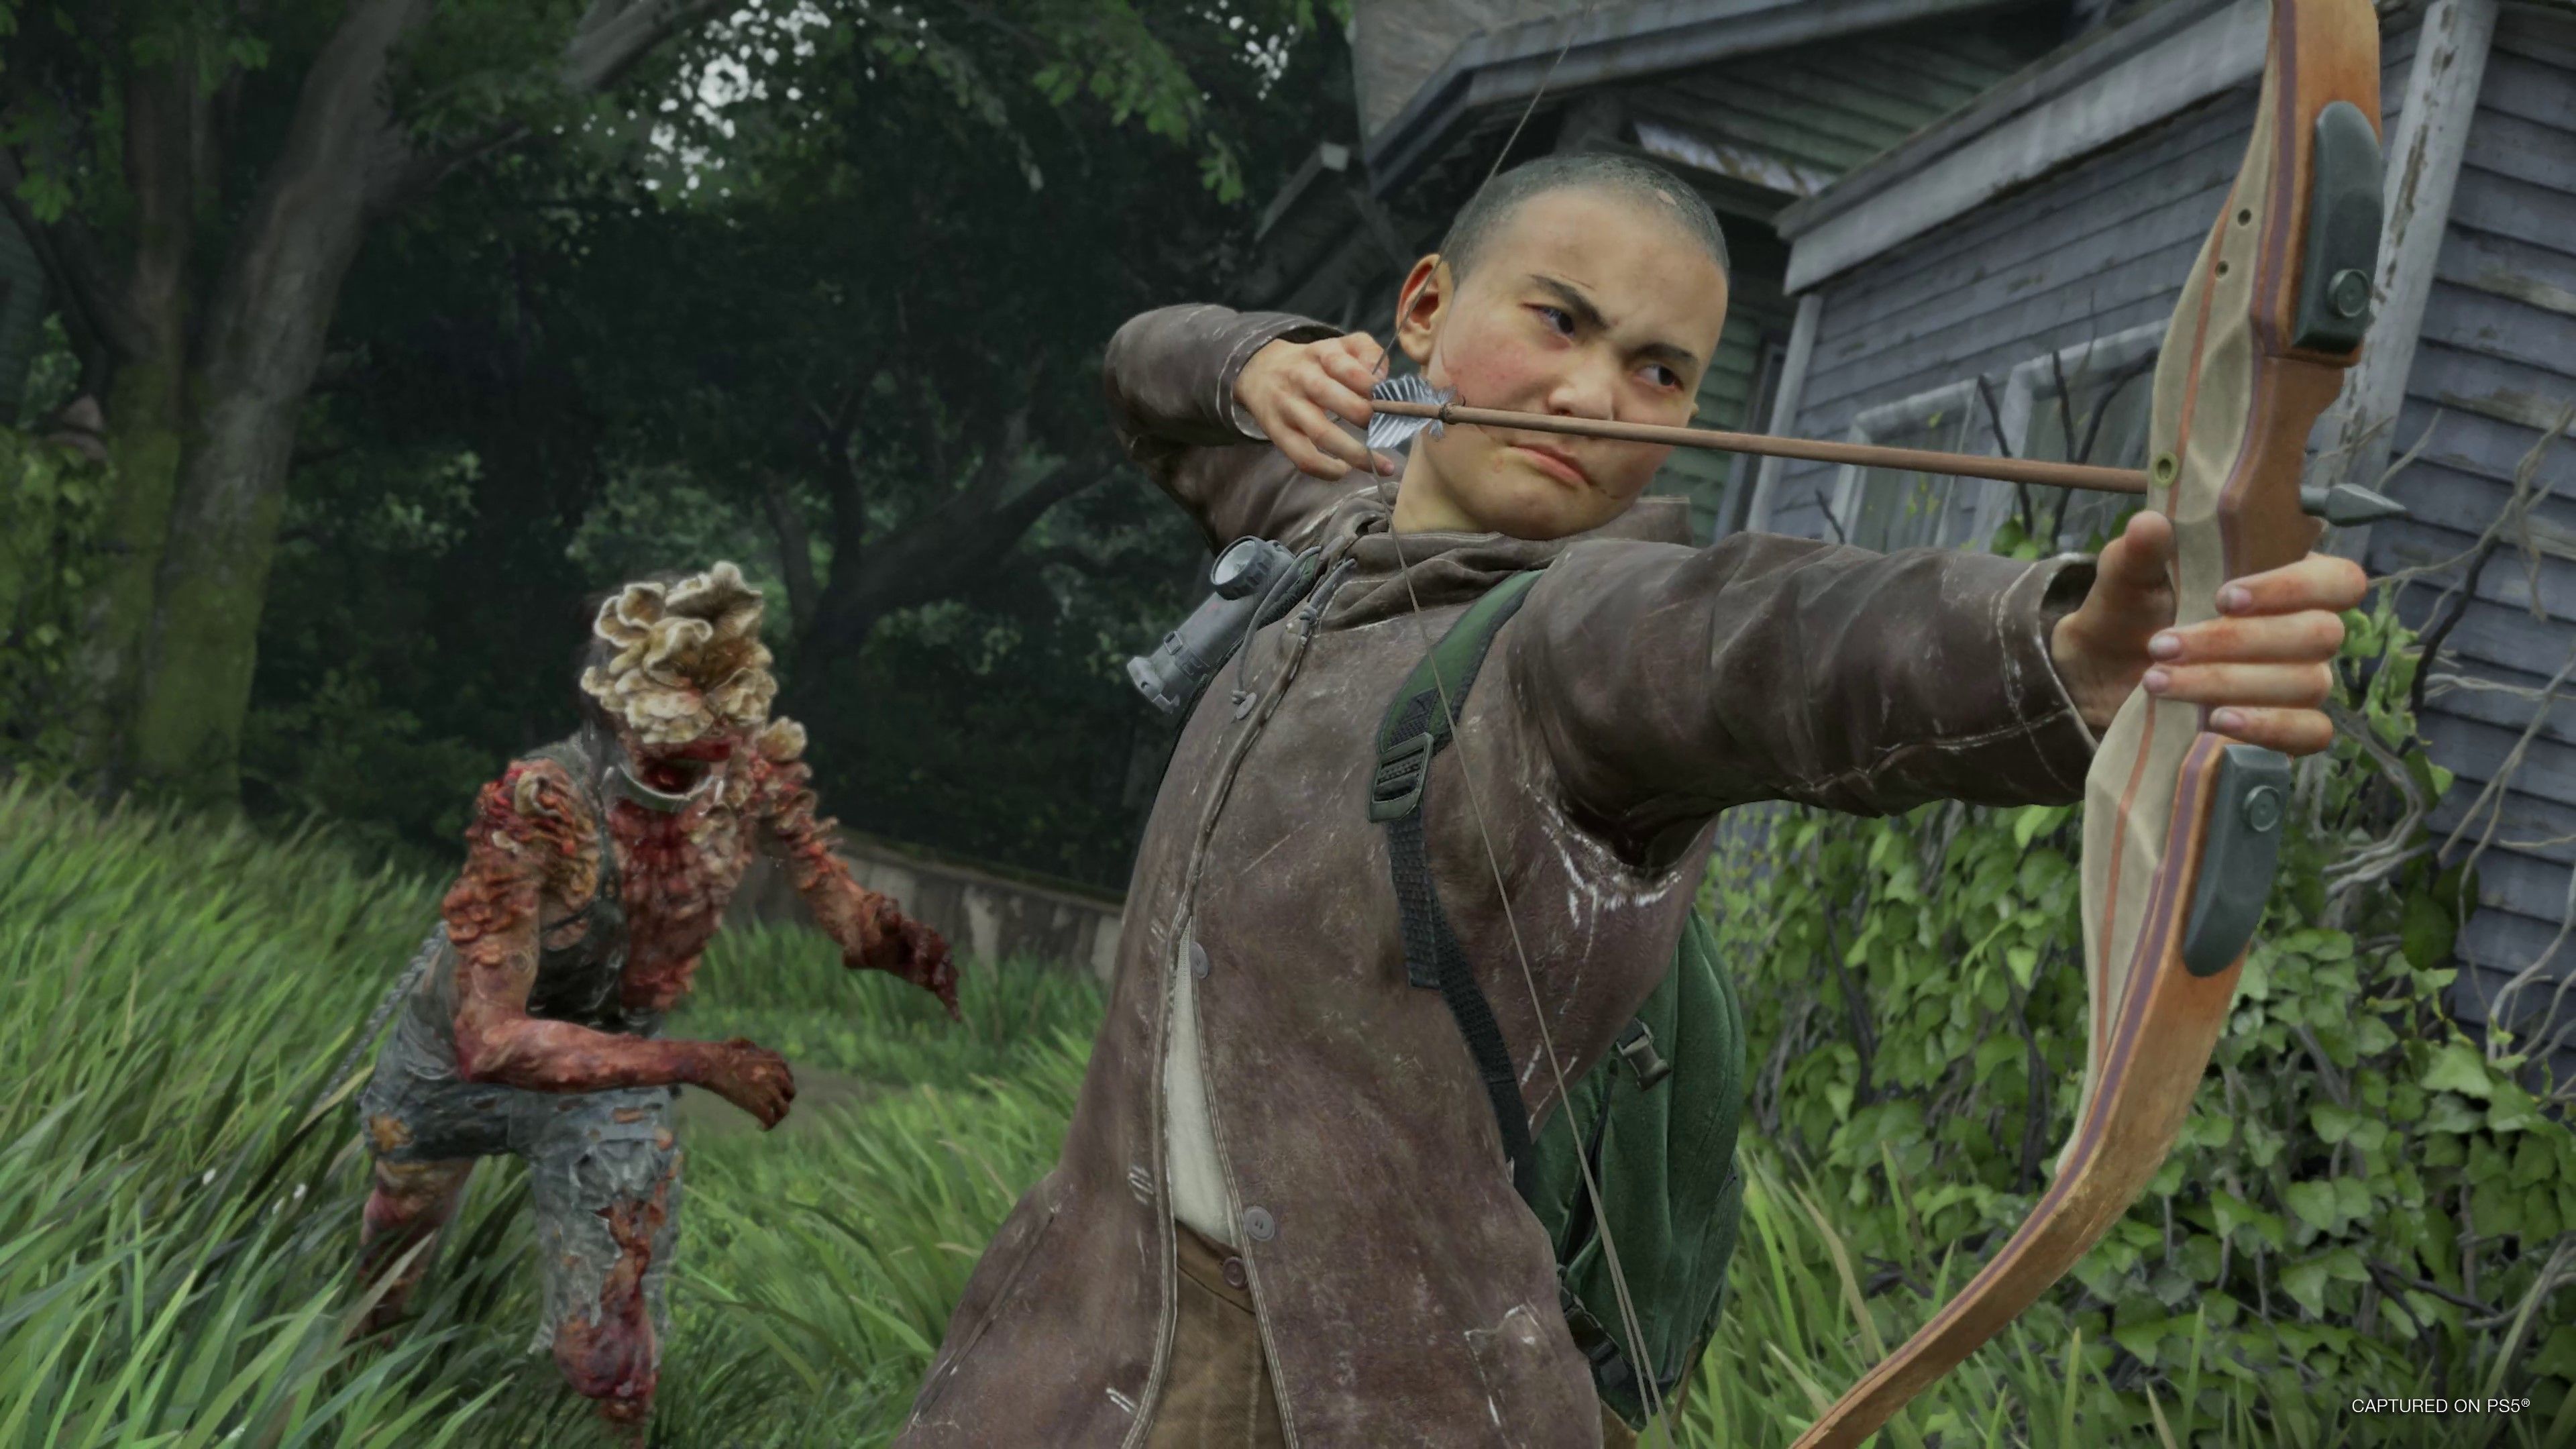 The Last of Us Parte 2 Remasterizado de PS5 detalla su opción para